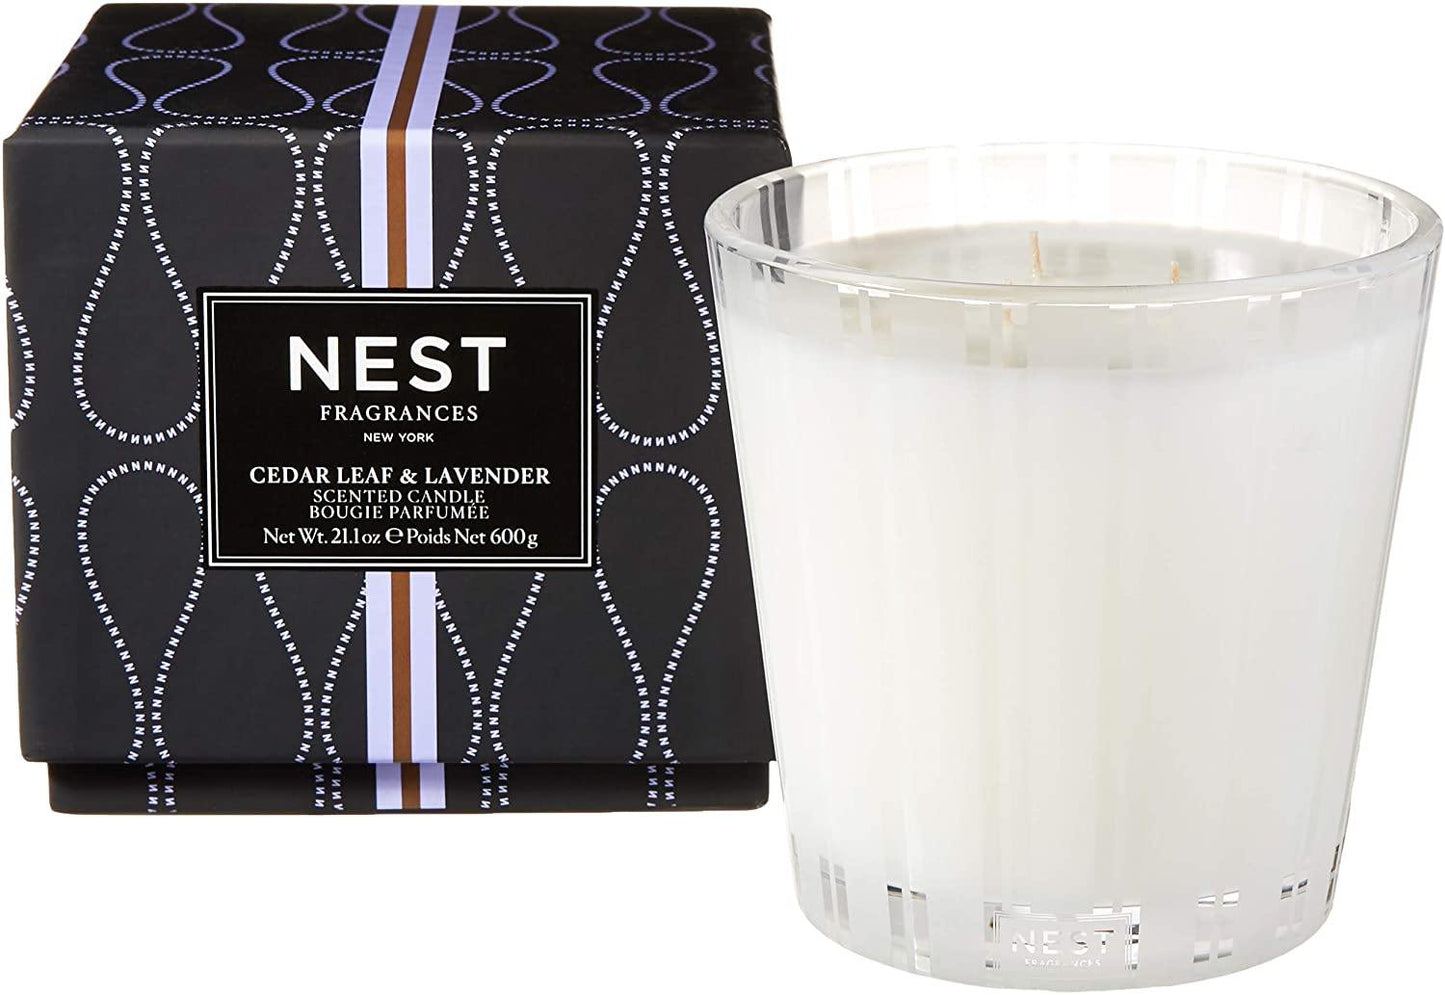 Nest Fragrances Cedar Leaf & Lavender Candle - ScentGiant